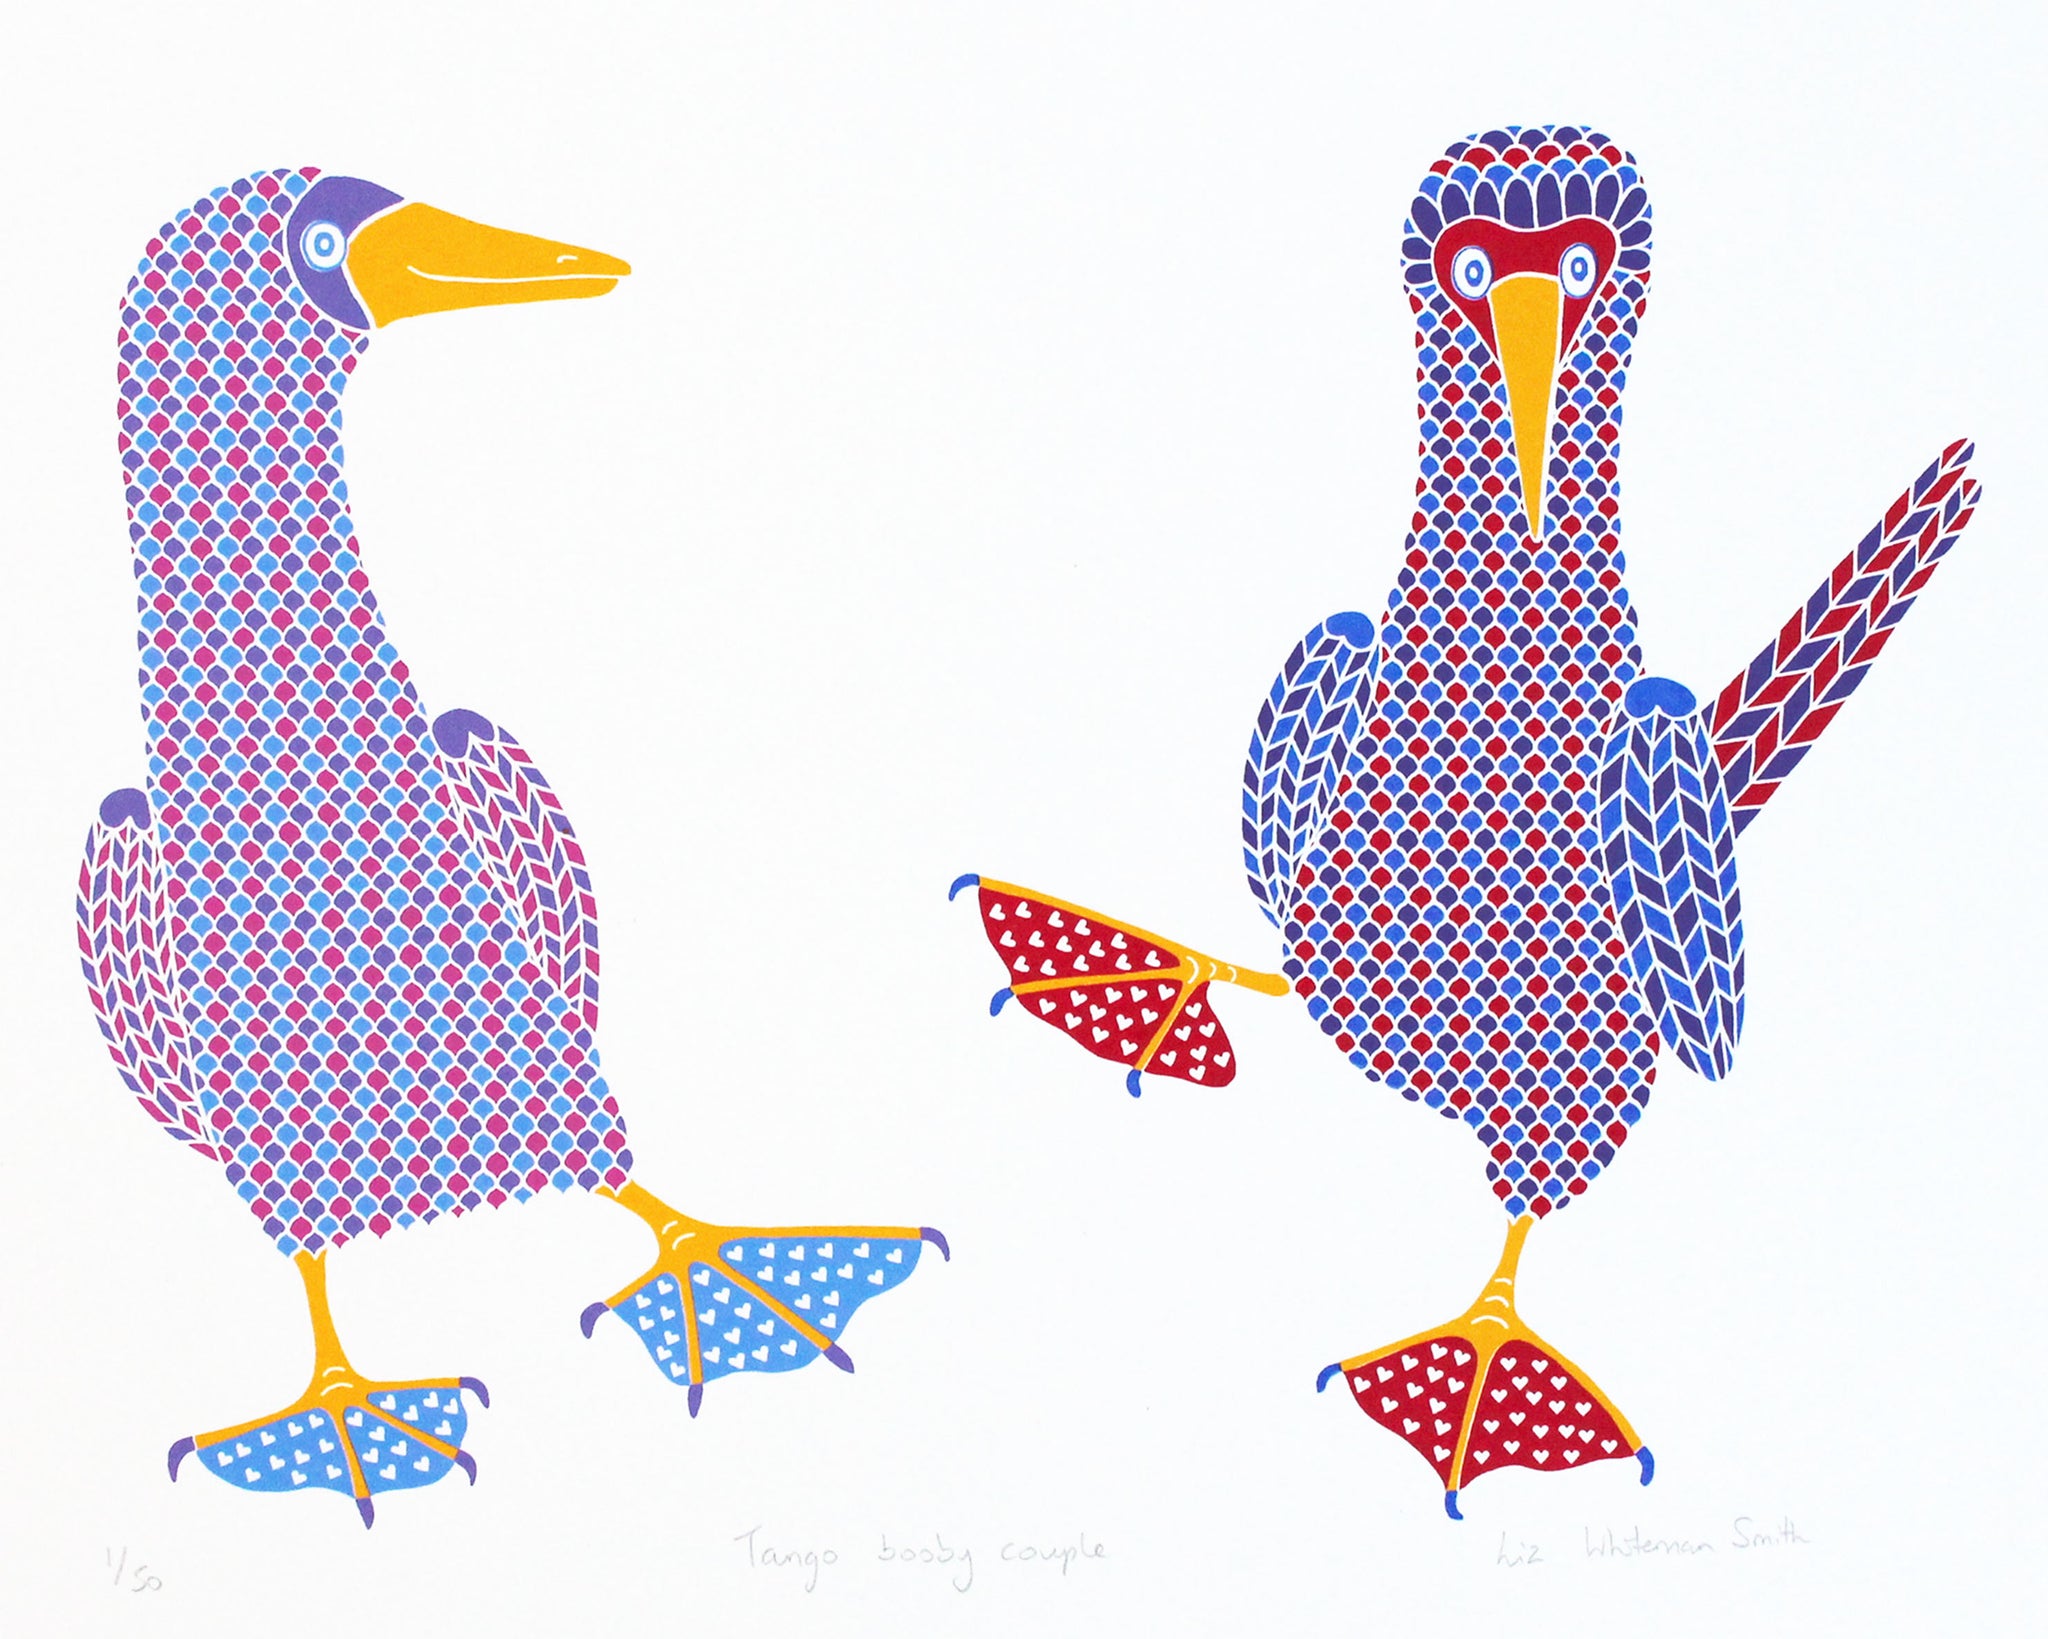 Tango booby couple screen print by Liz Whiteman Smith, dancing booby birds